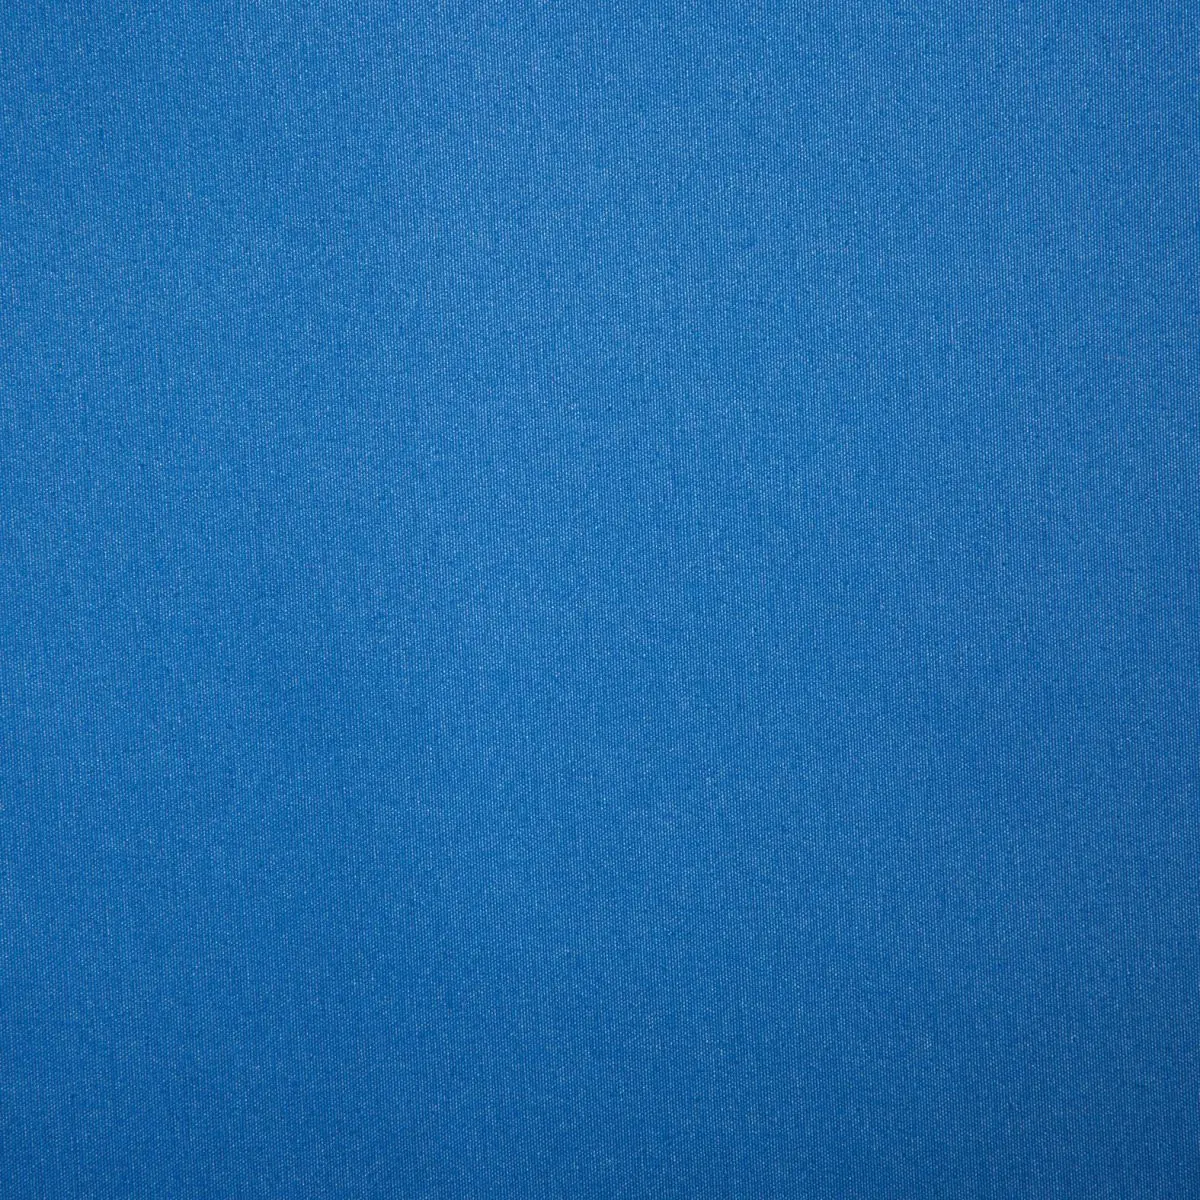 Slnečná strieška Playa - modrá, 450 x 240 cm